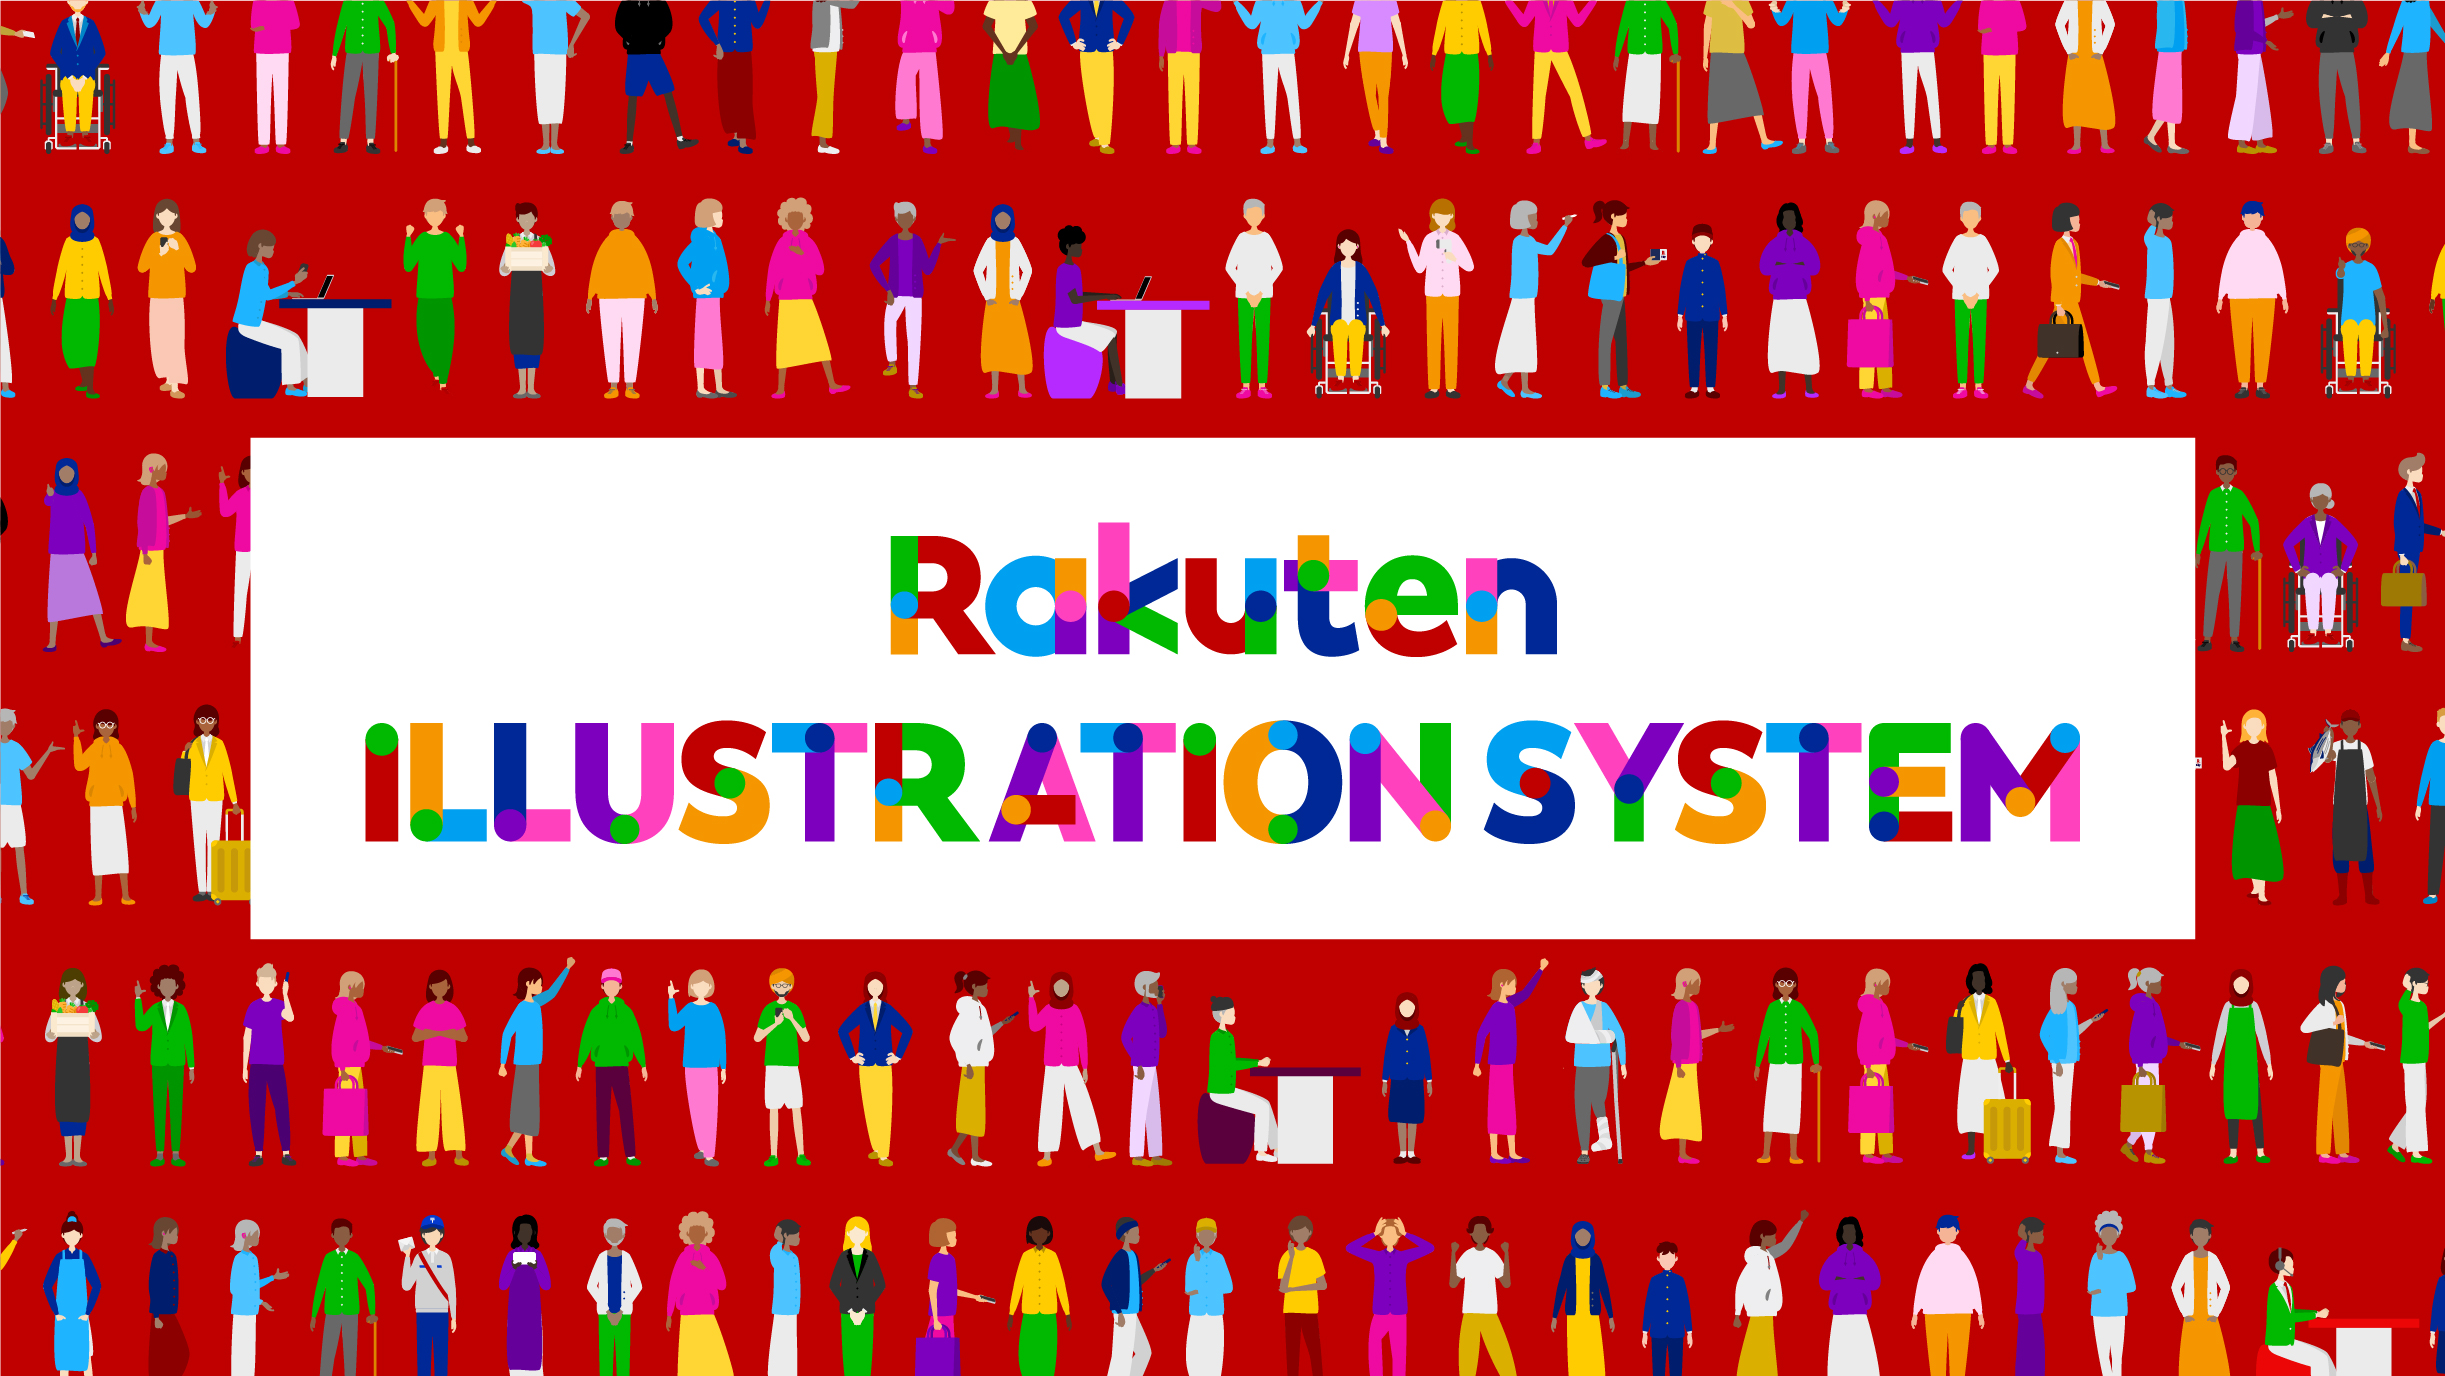 楽天独自のイラストデザインシステム Rakuten Illustration System が 22年度 グッドデザイン賞 を受賞 楽天 グループ株式会社